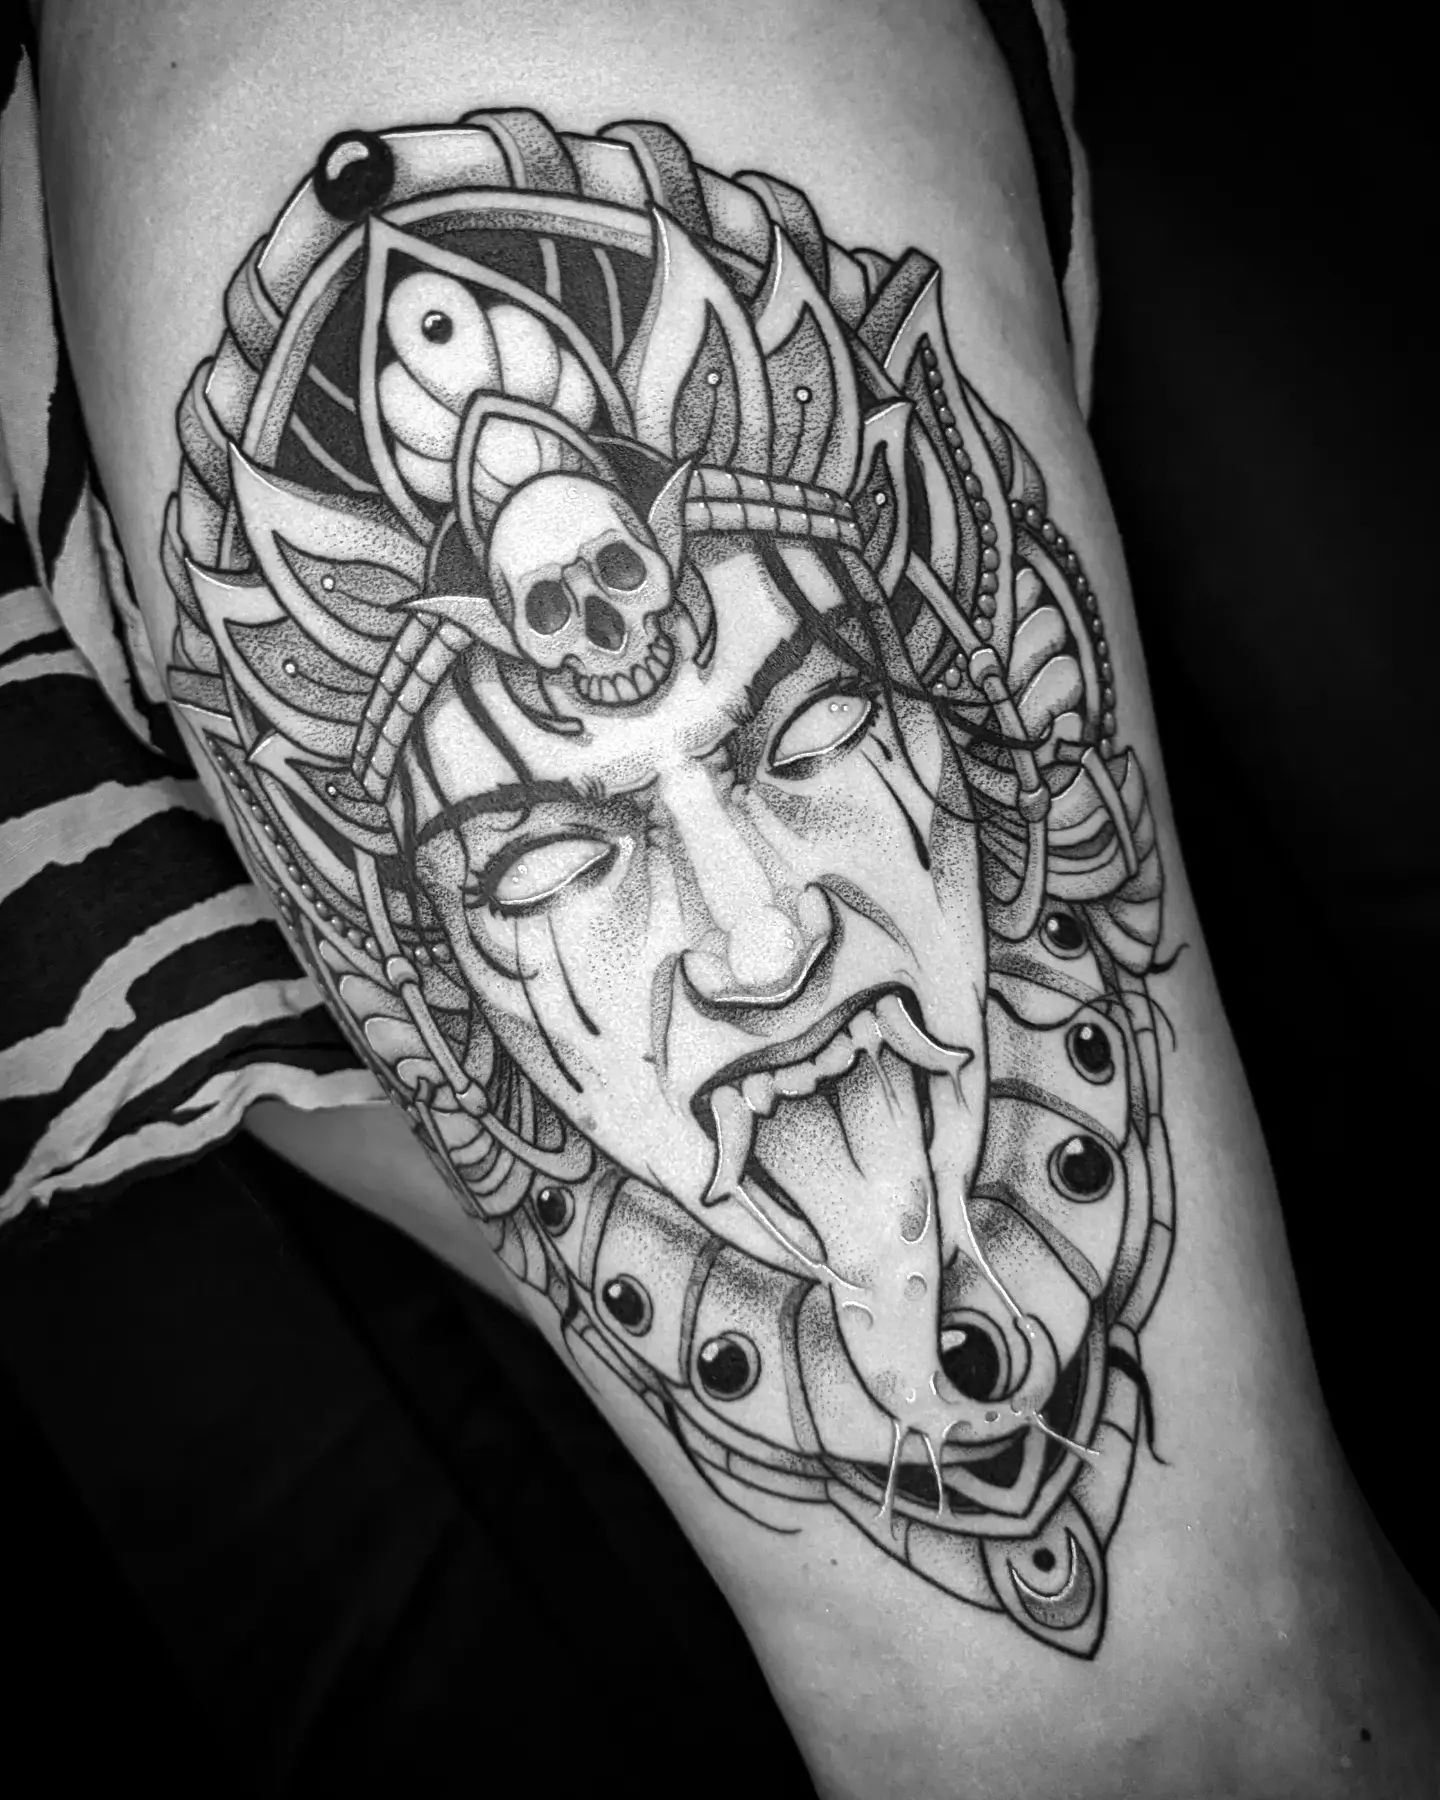 #tattoo #kali #blackwork #tattooartist #inked #tattoos #tattoostyle #tattooart #